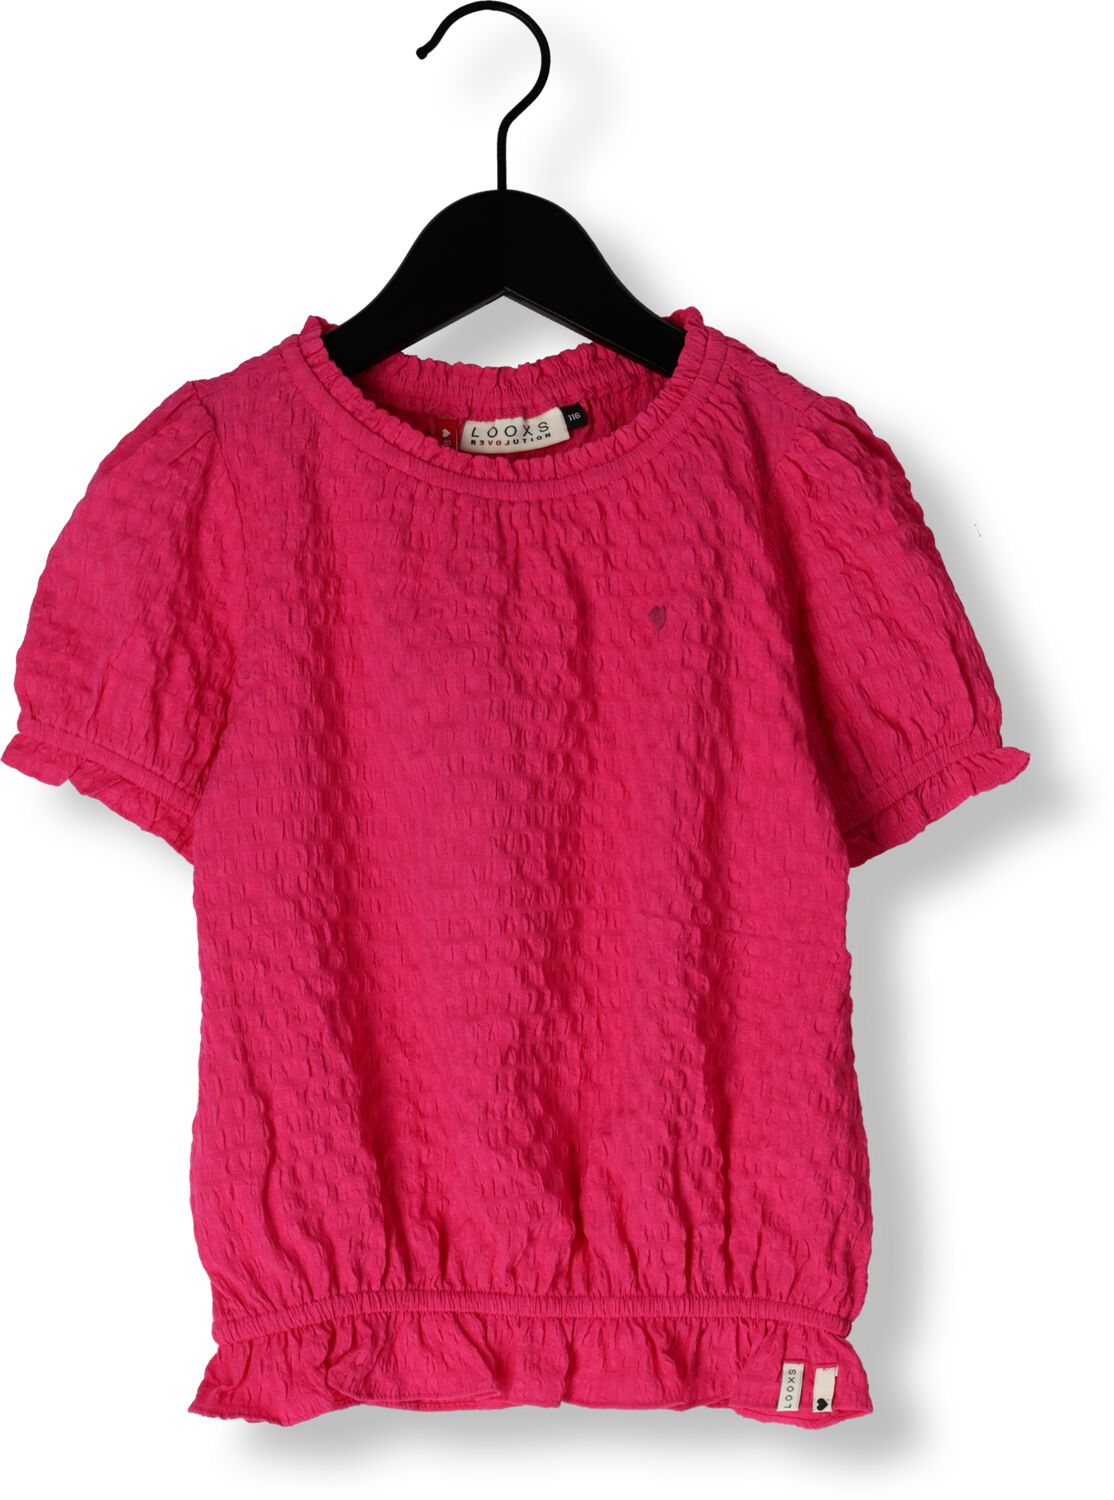 LOOXS Little Meisjes Tops & T-shirts 2412-7146 Roze